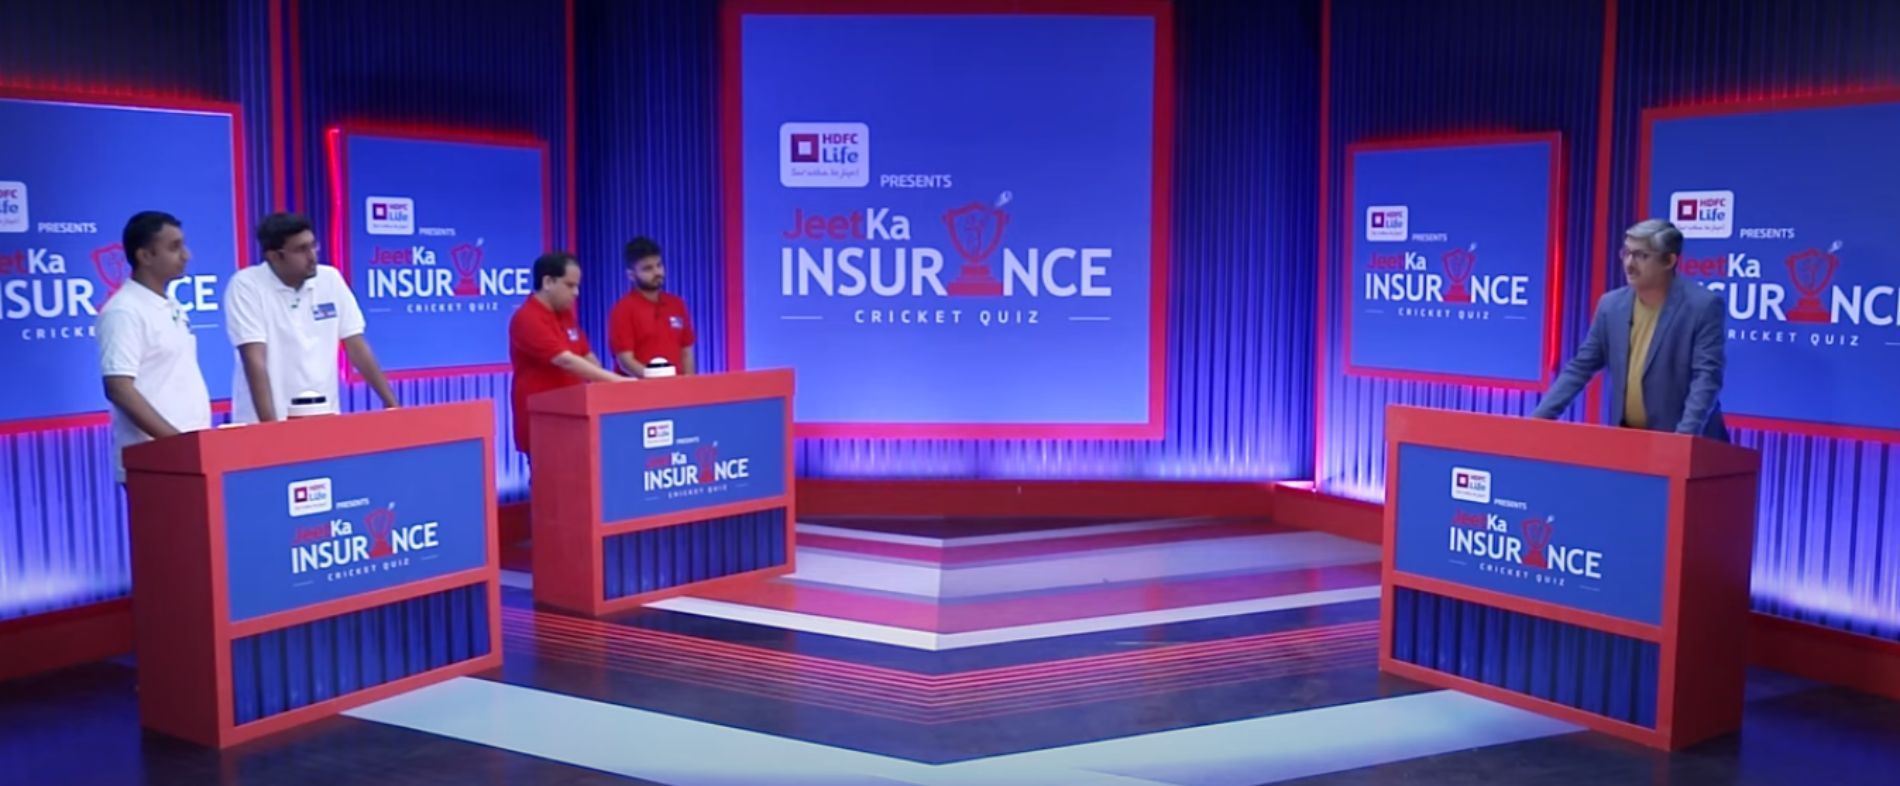 HDFC Life presents Jeet Ka Insurance Cricket Quiz